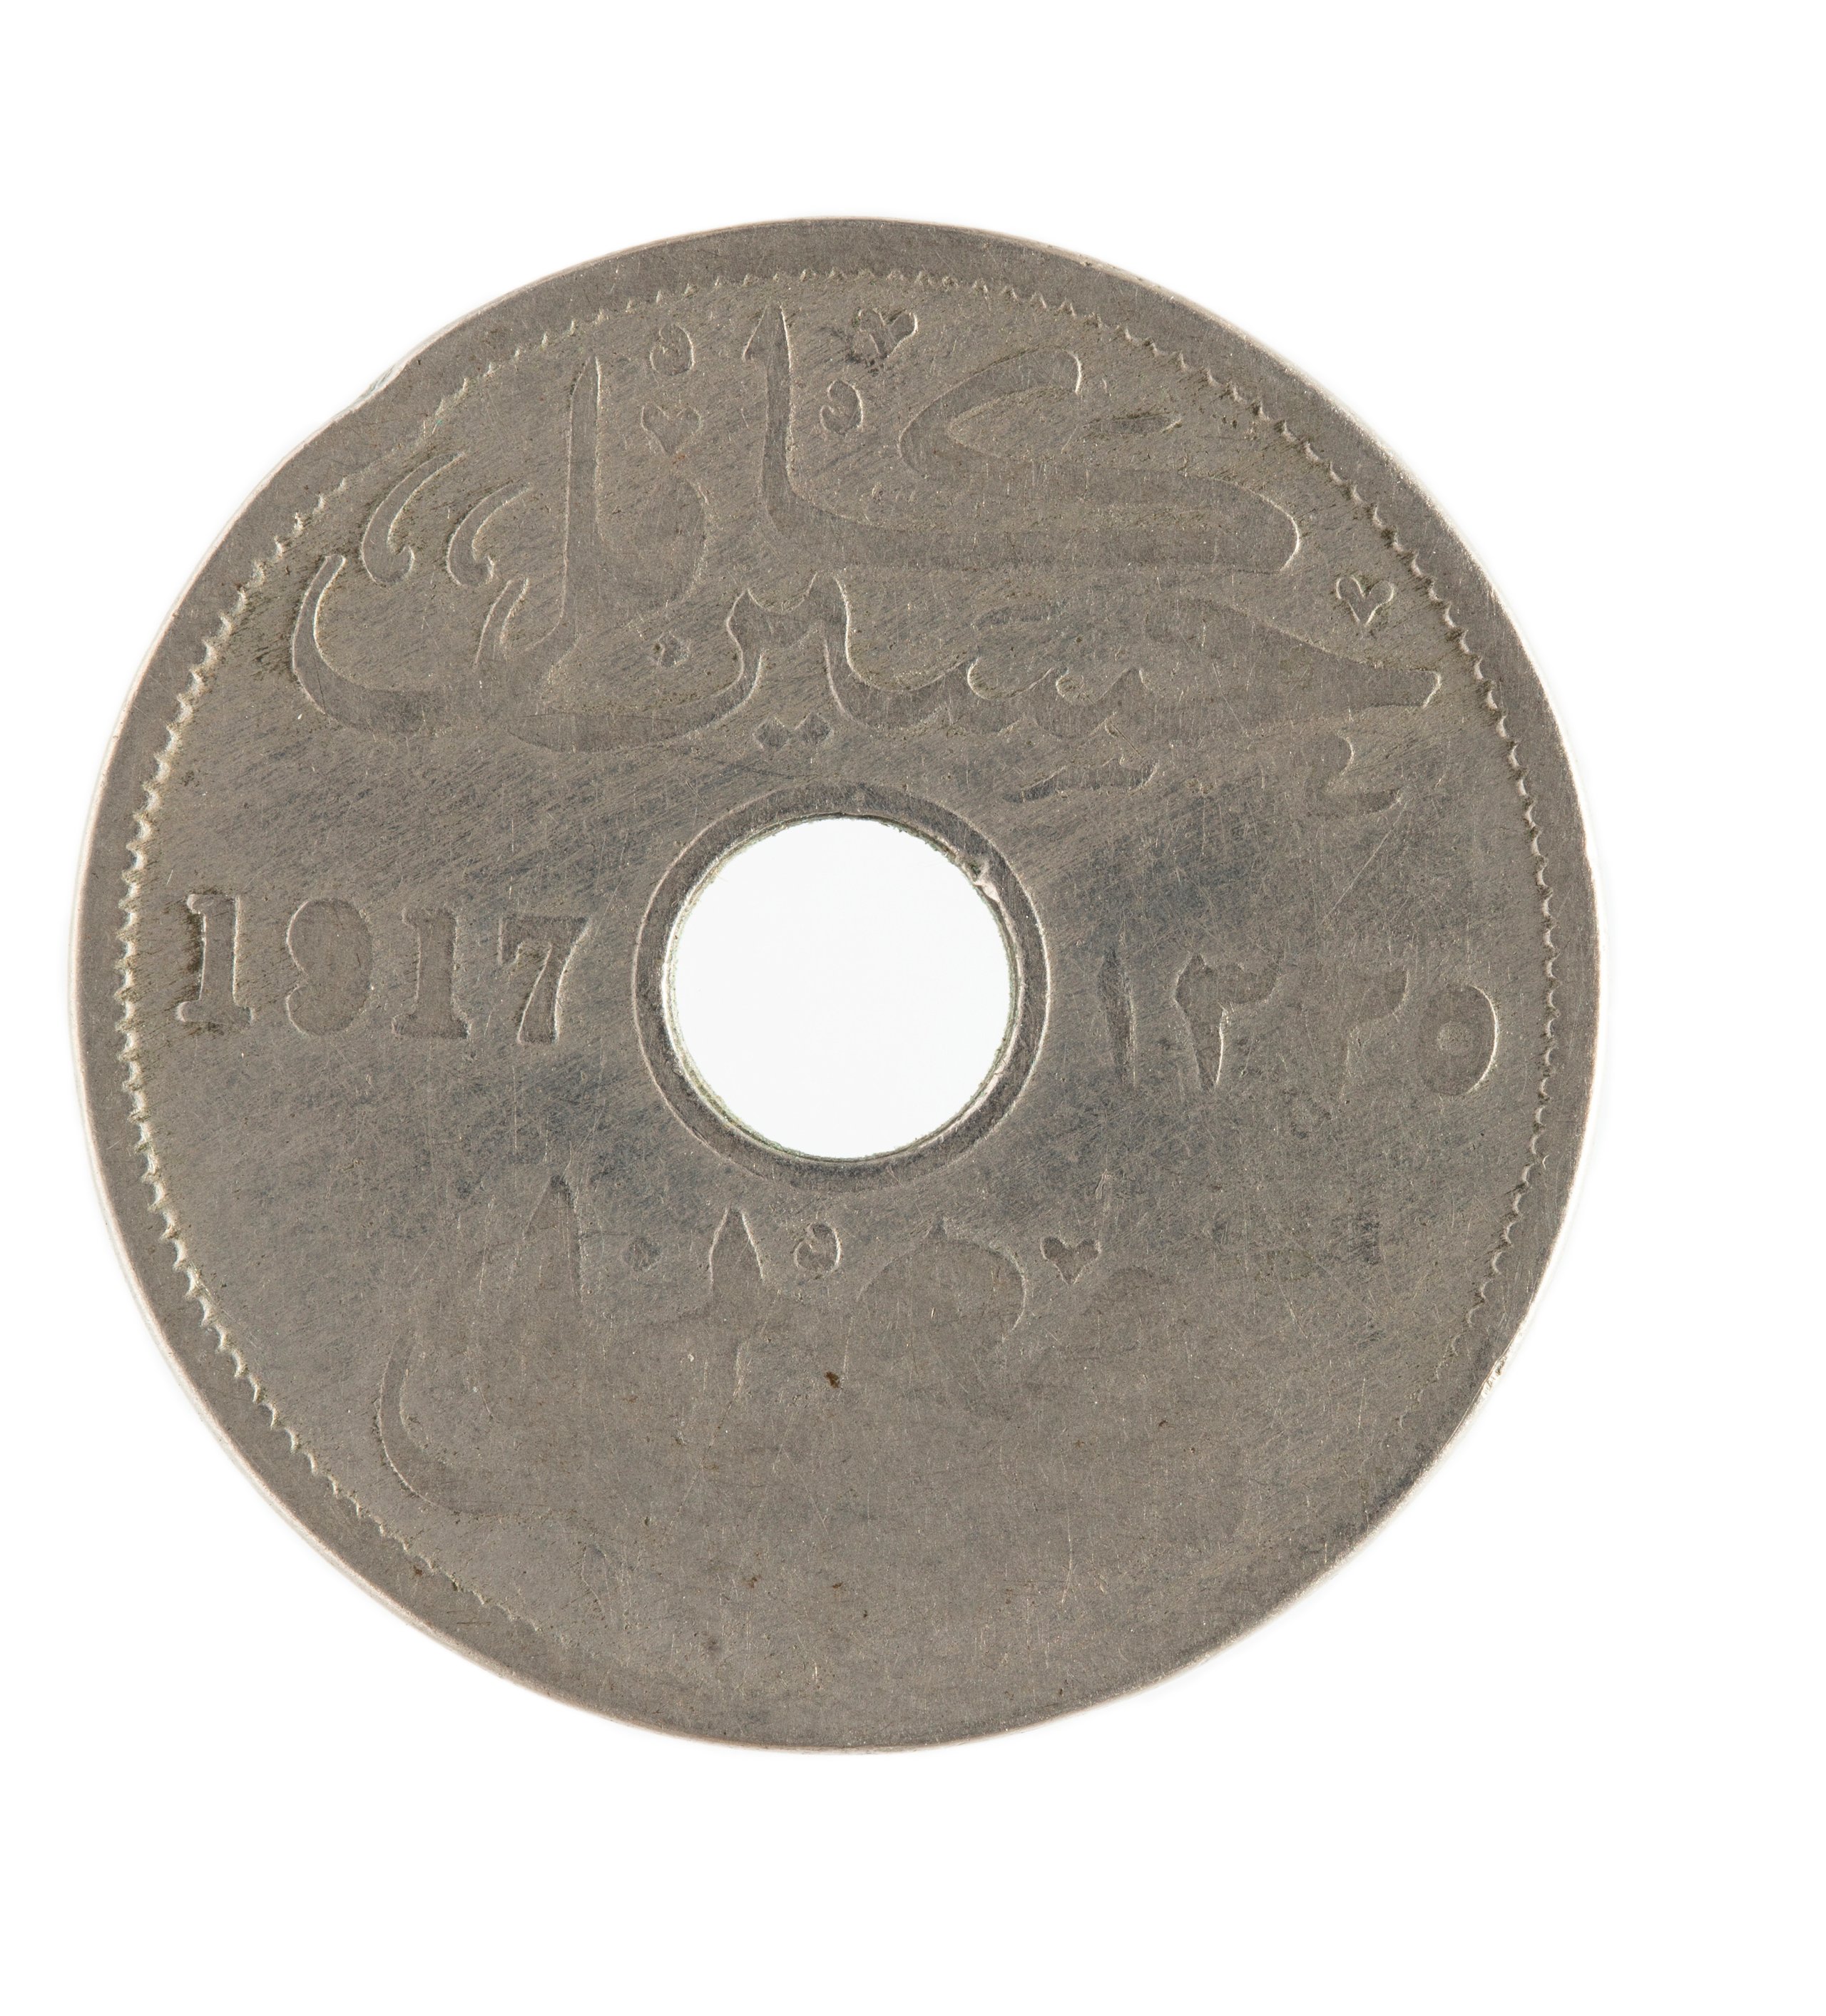 Egyptian Ten Milliemes coin